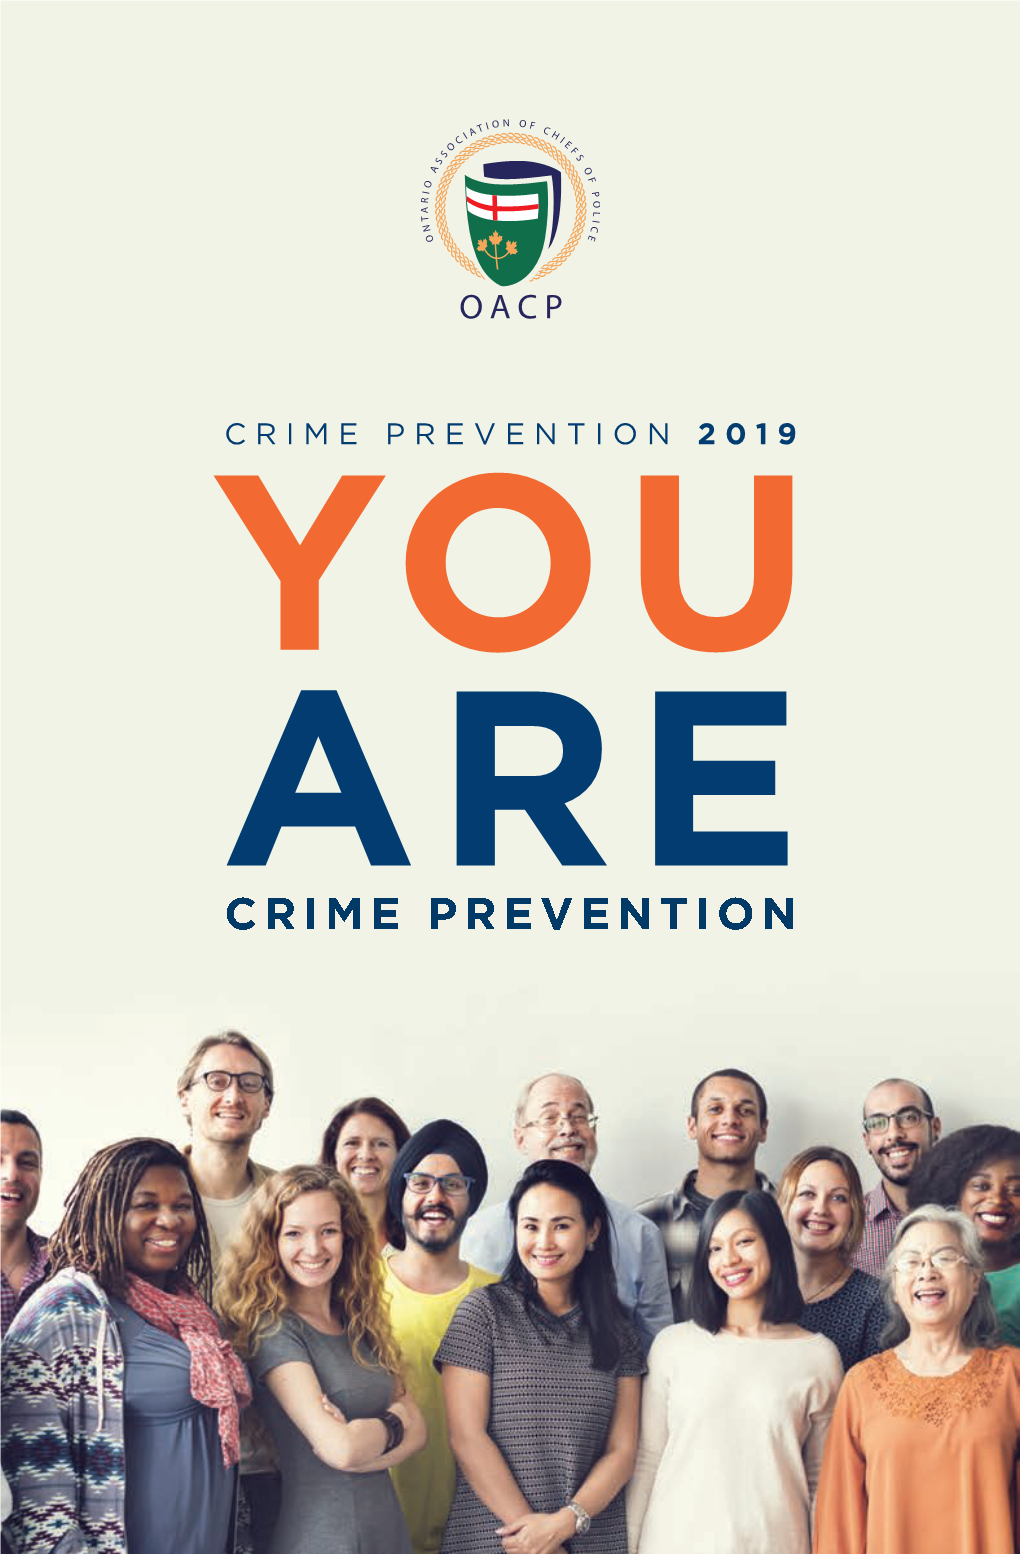 CRIME PREVENTION 2019 YOU ARE CRIME PREVENTION HON OAPC Ad 2017 OAPC 17-02-02 11:09 AM Page 1